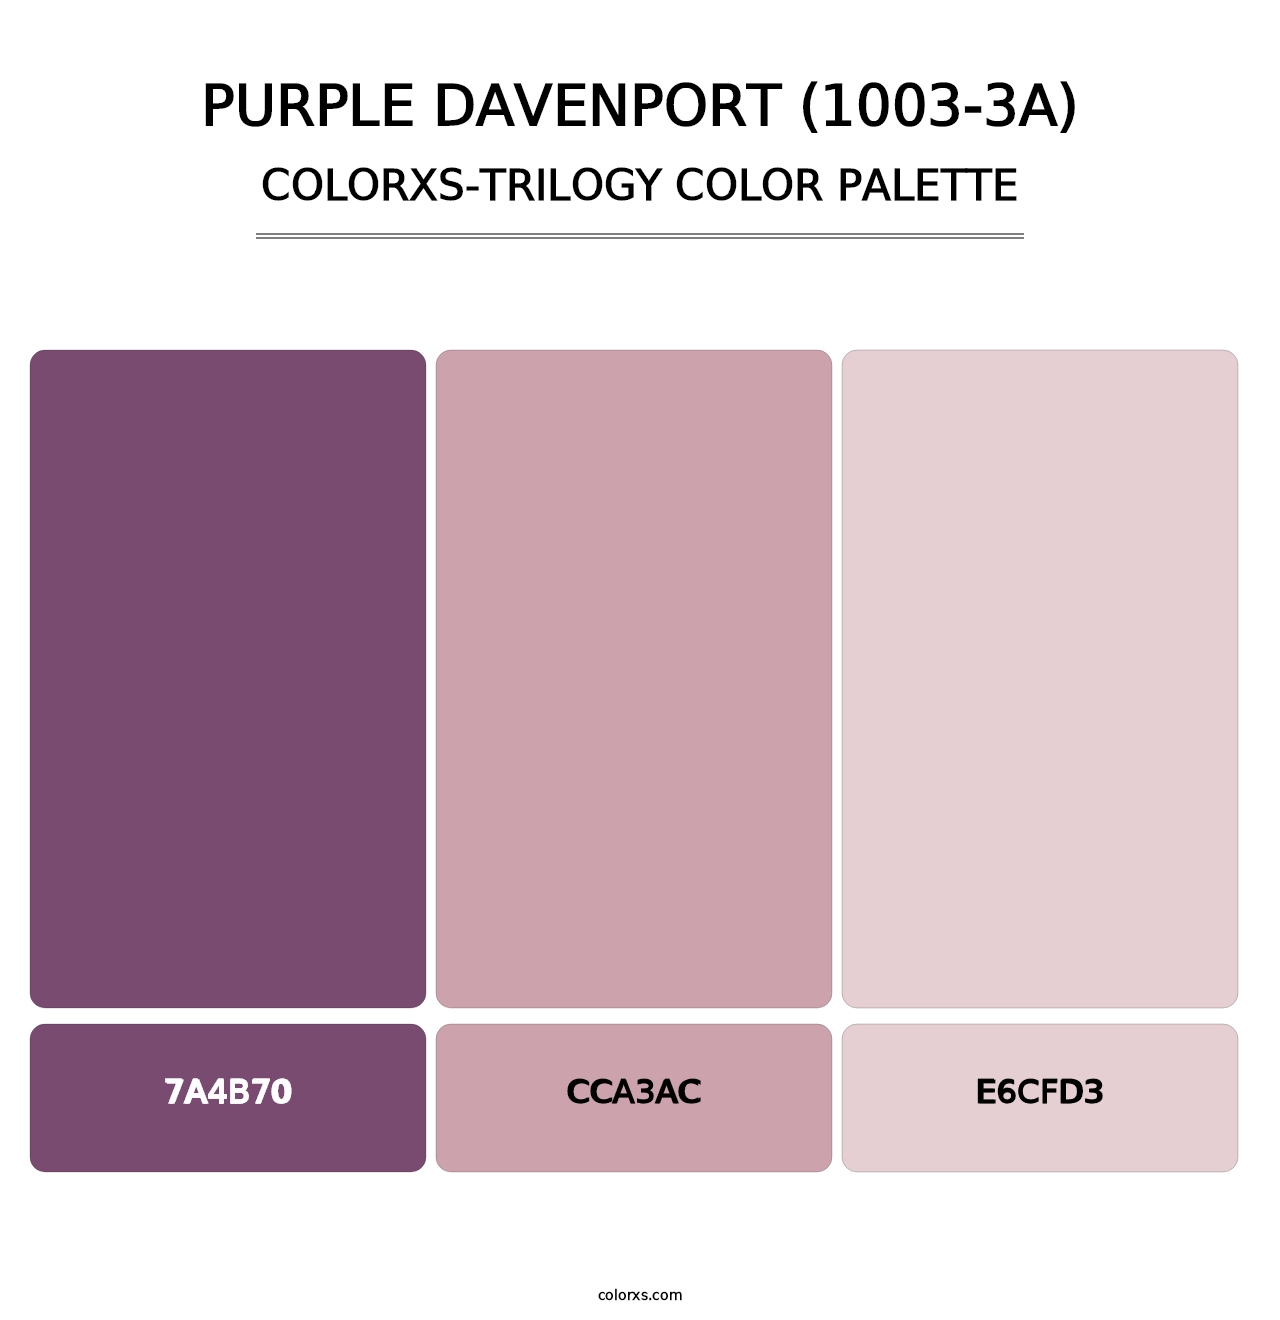 Purple Davenport (1003-3A) - Colorxs Trilogy Palette